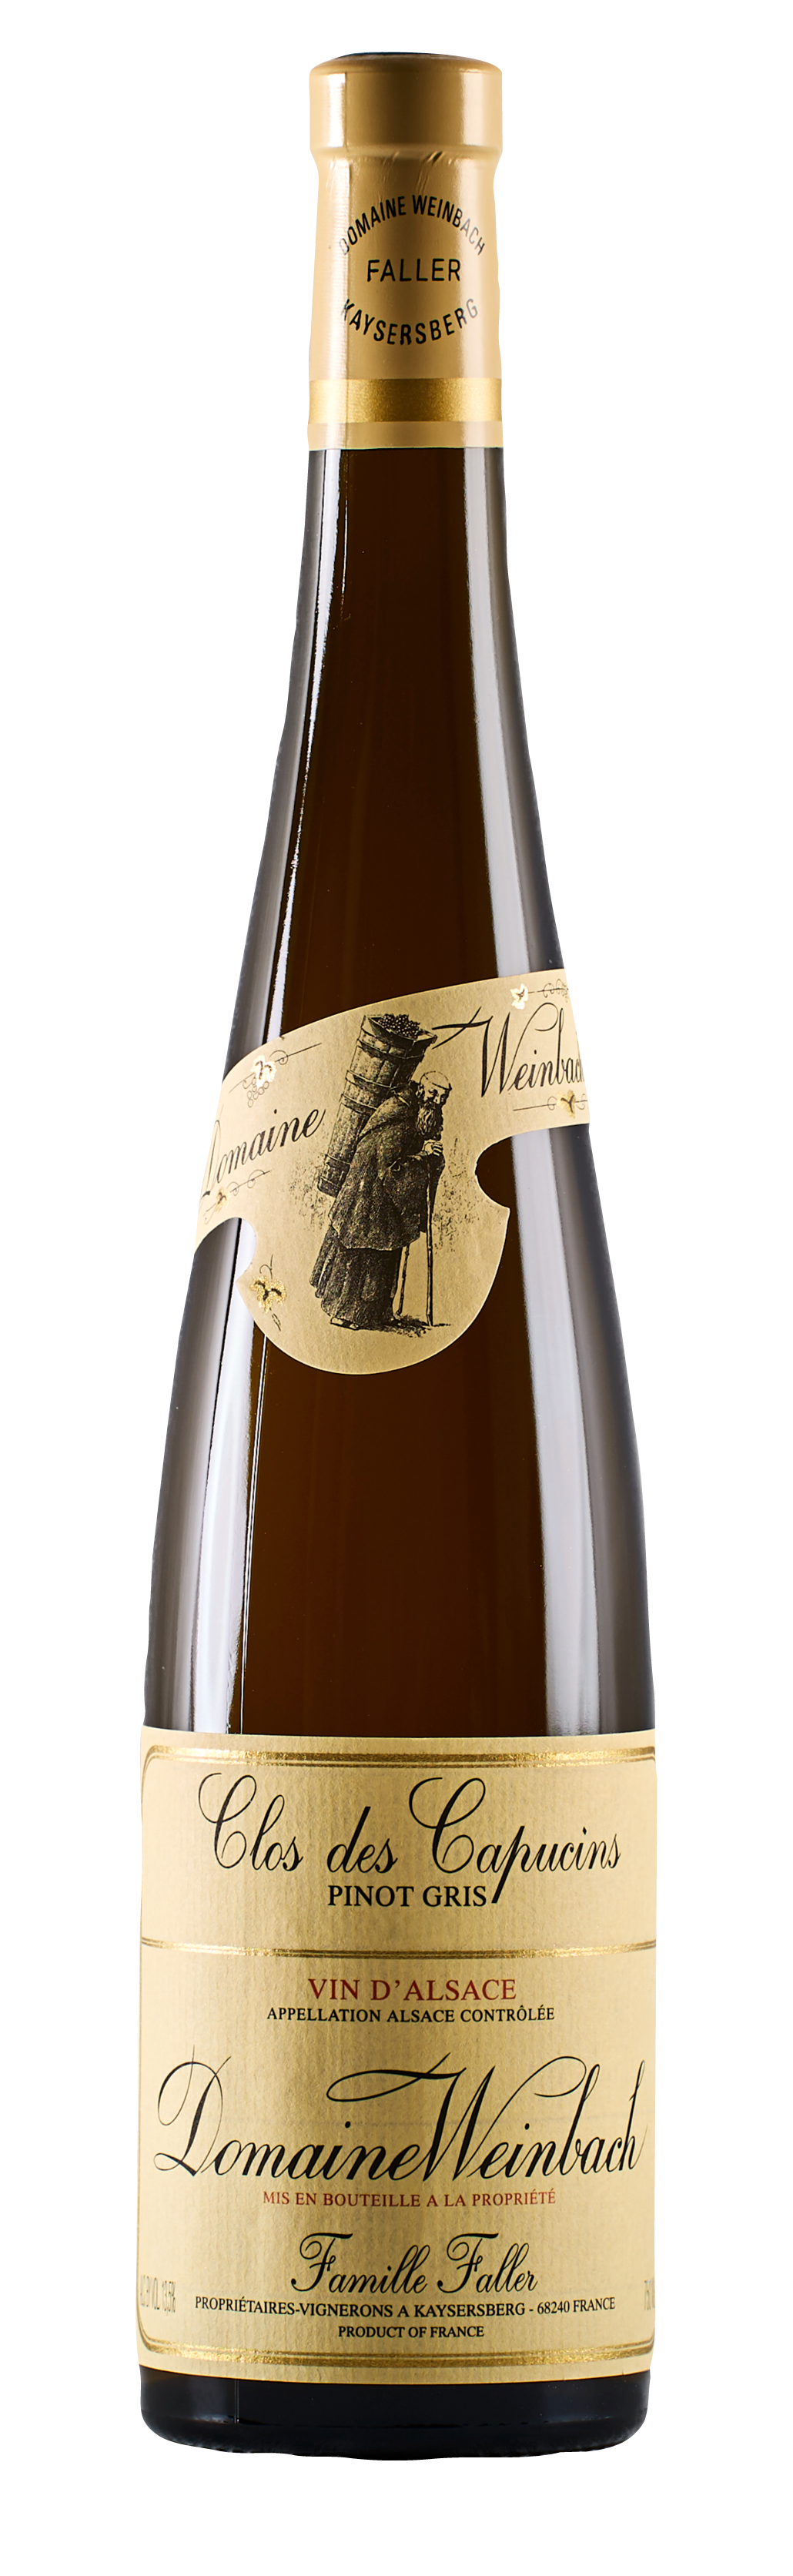 Domaine Weinbach<br />2019 Pinot Gris Clos des Capucins<br>France